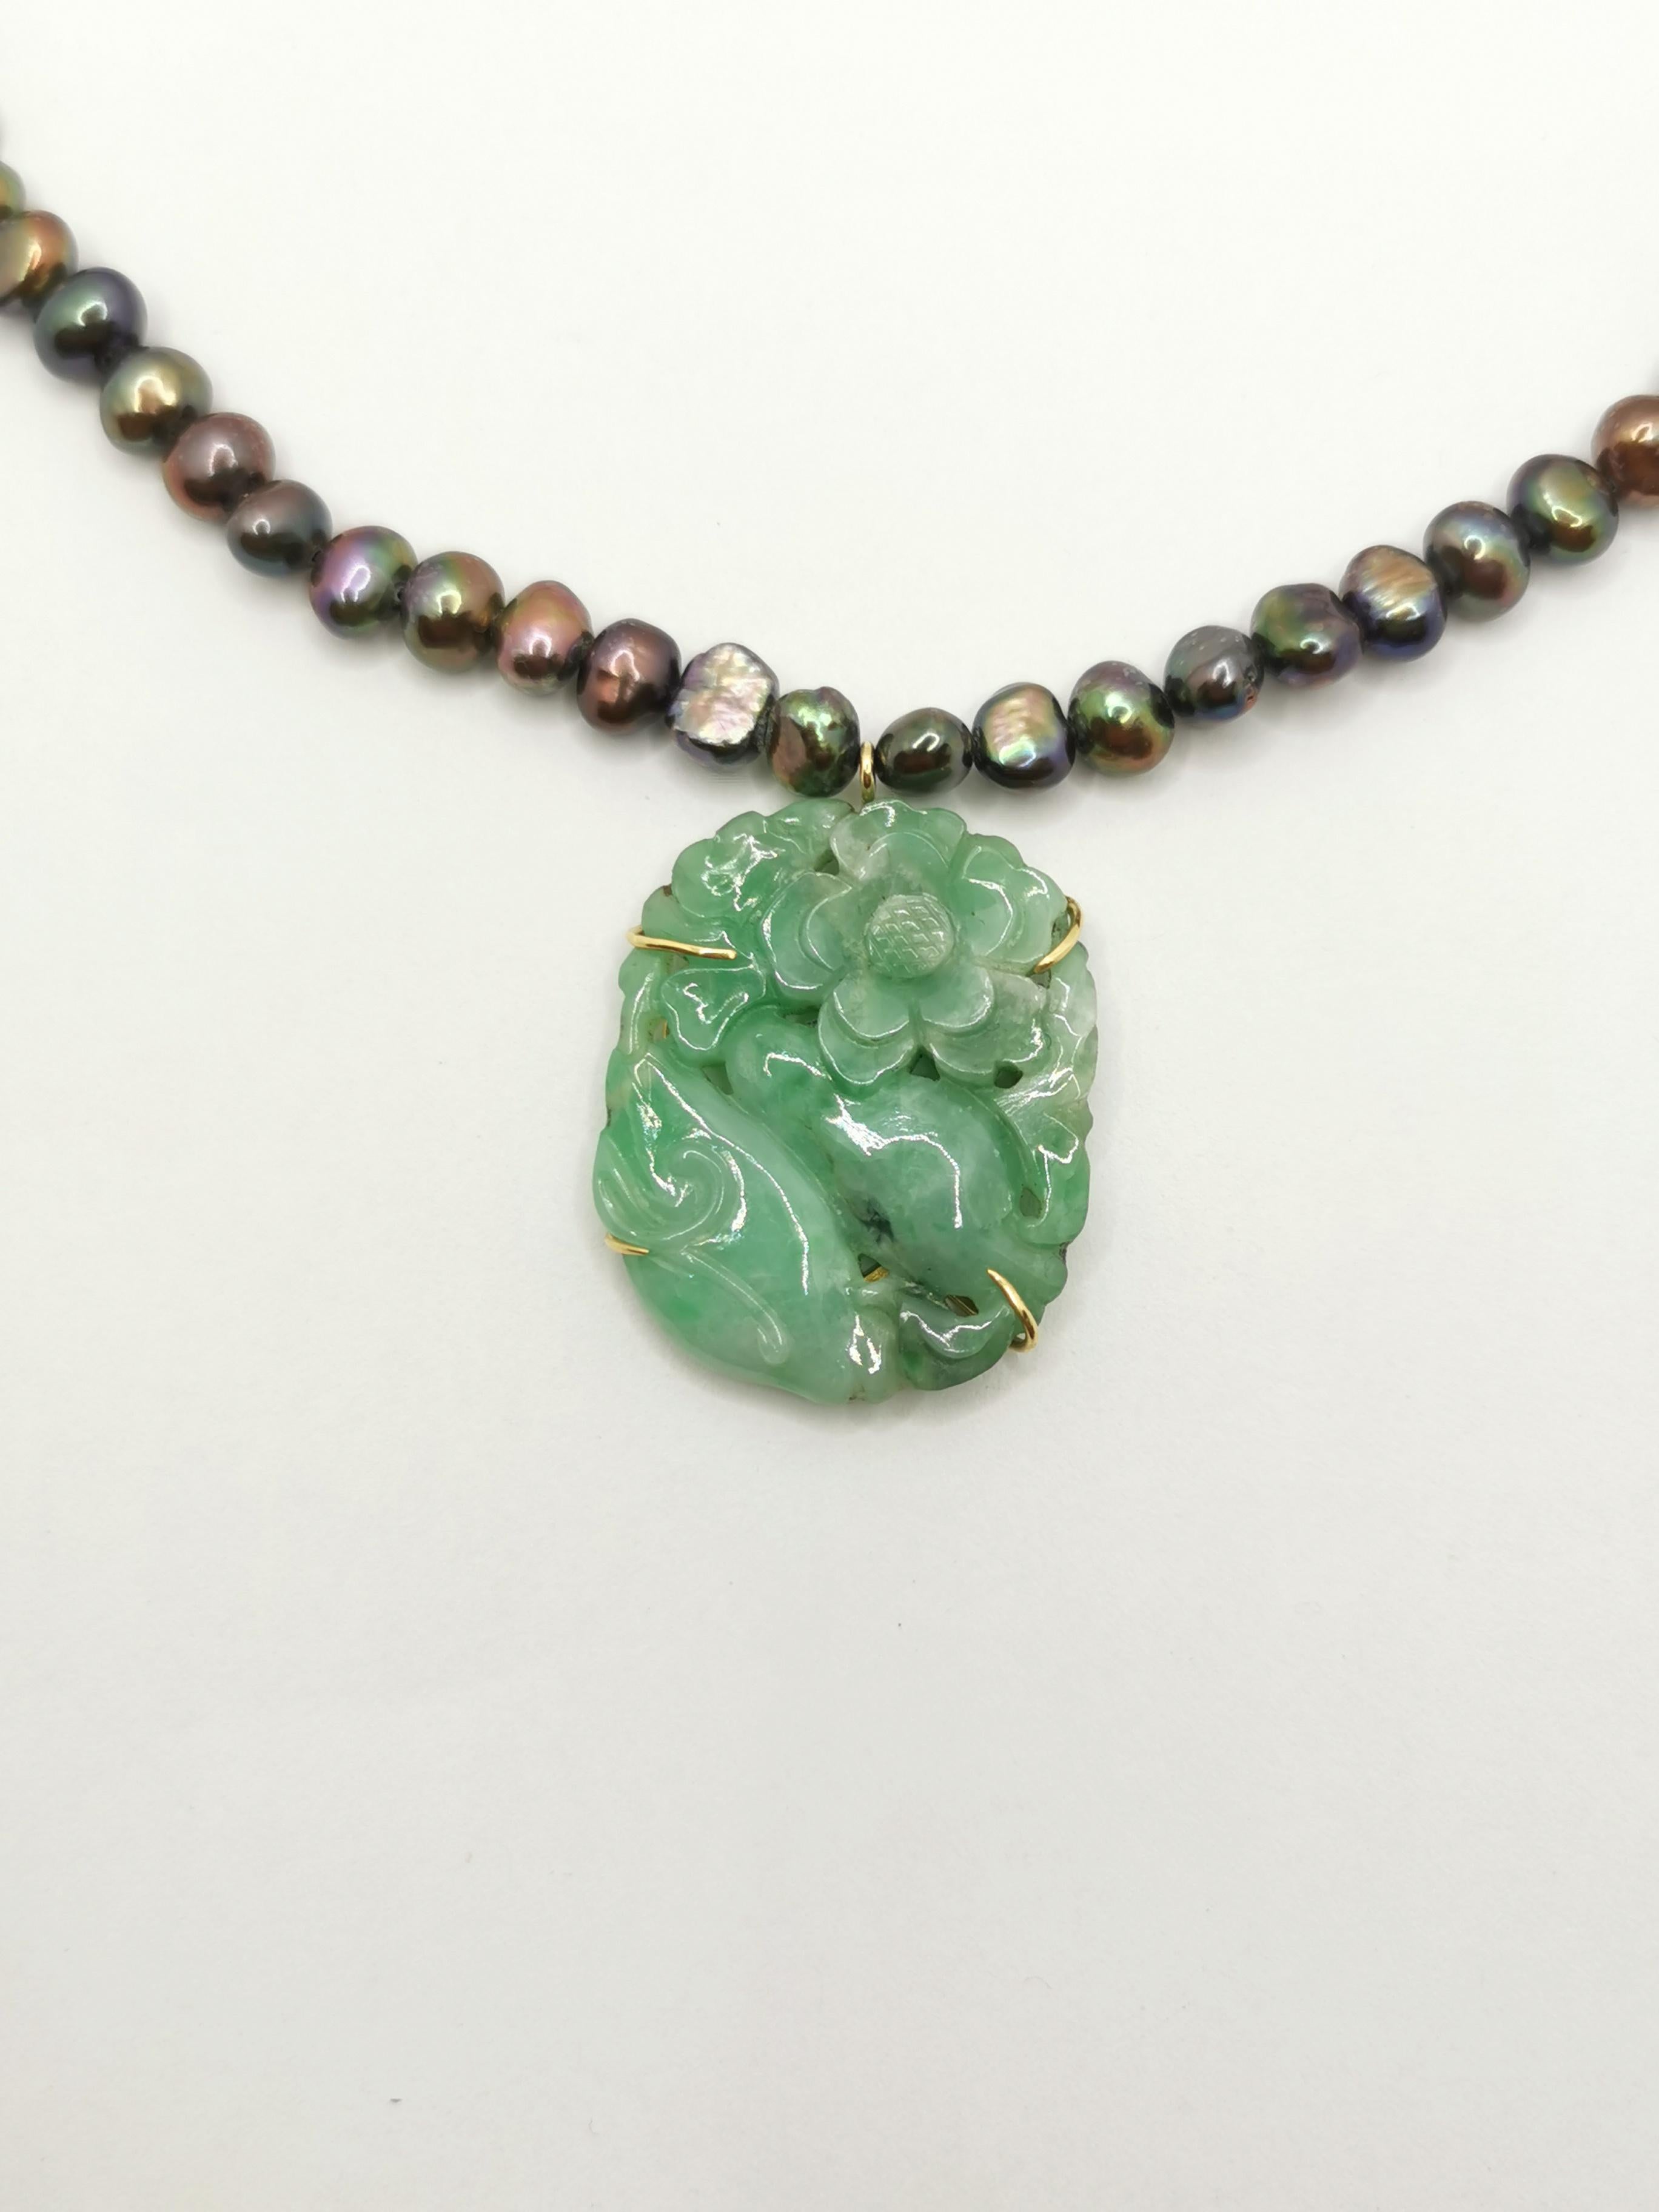 Hier ist eine wunderschöne Halskette aus Tahiti-Süßwasserperlen.

Die Perlen sind eine großartige Qualität von Tahitiperlen aus Süßwasser.
Sie wechseln ihre Farbe von grün über grau bis violett.
Ihre unregelmäßige Form ist das Hauptmerkmal und